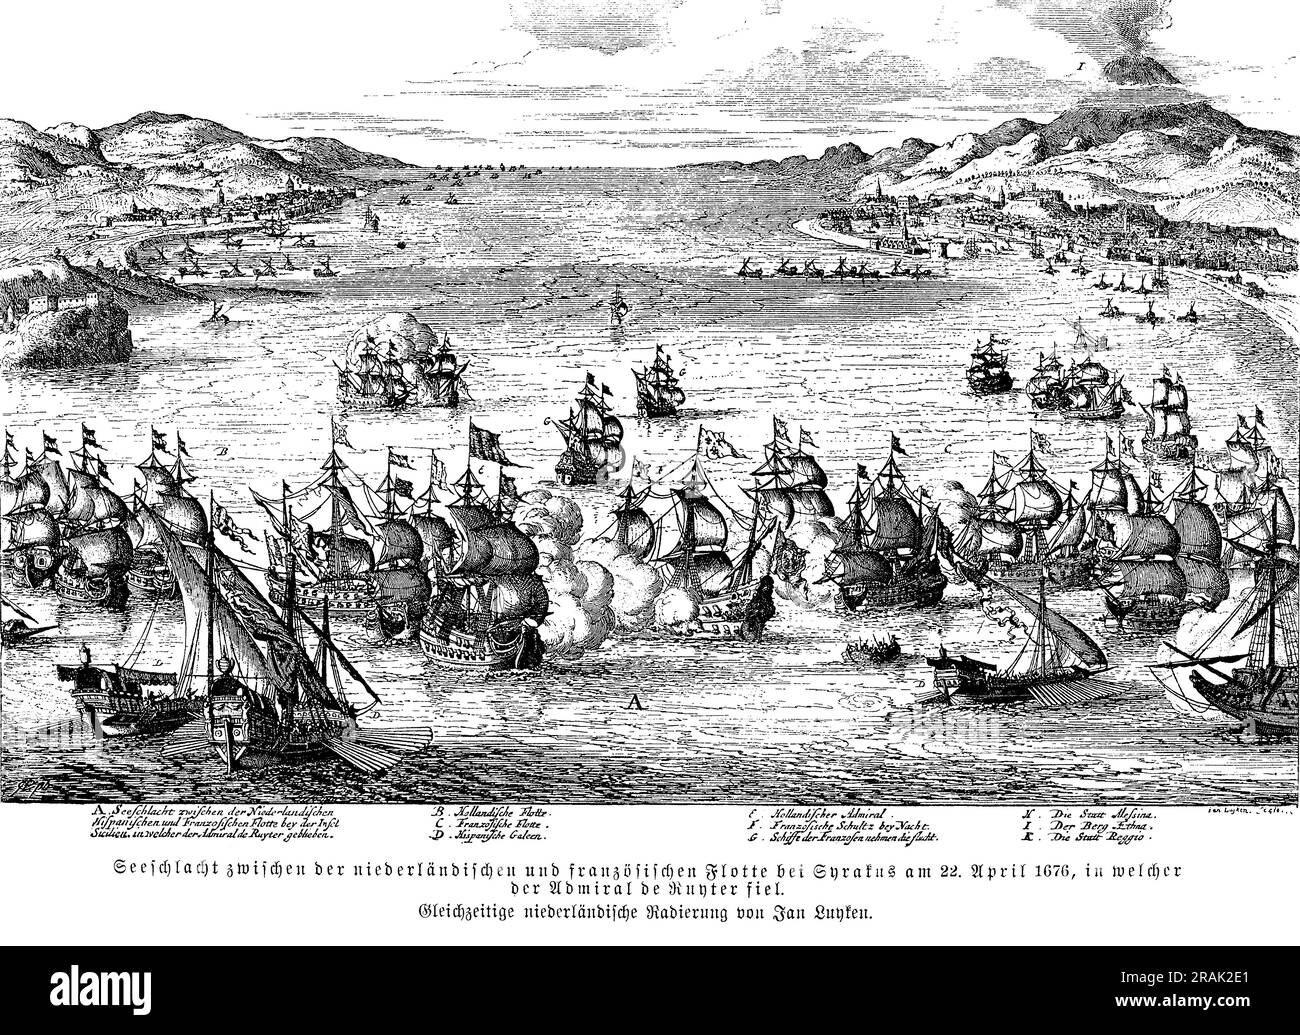 Battaglia navale tra la marina olandese e quella francese nei pressi di Siracusa - Sicilia, dove l'ammiraglio de Ruyter fu ferito a morte, il 22 aprile 1676 Foto Stock